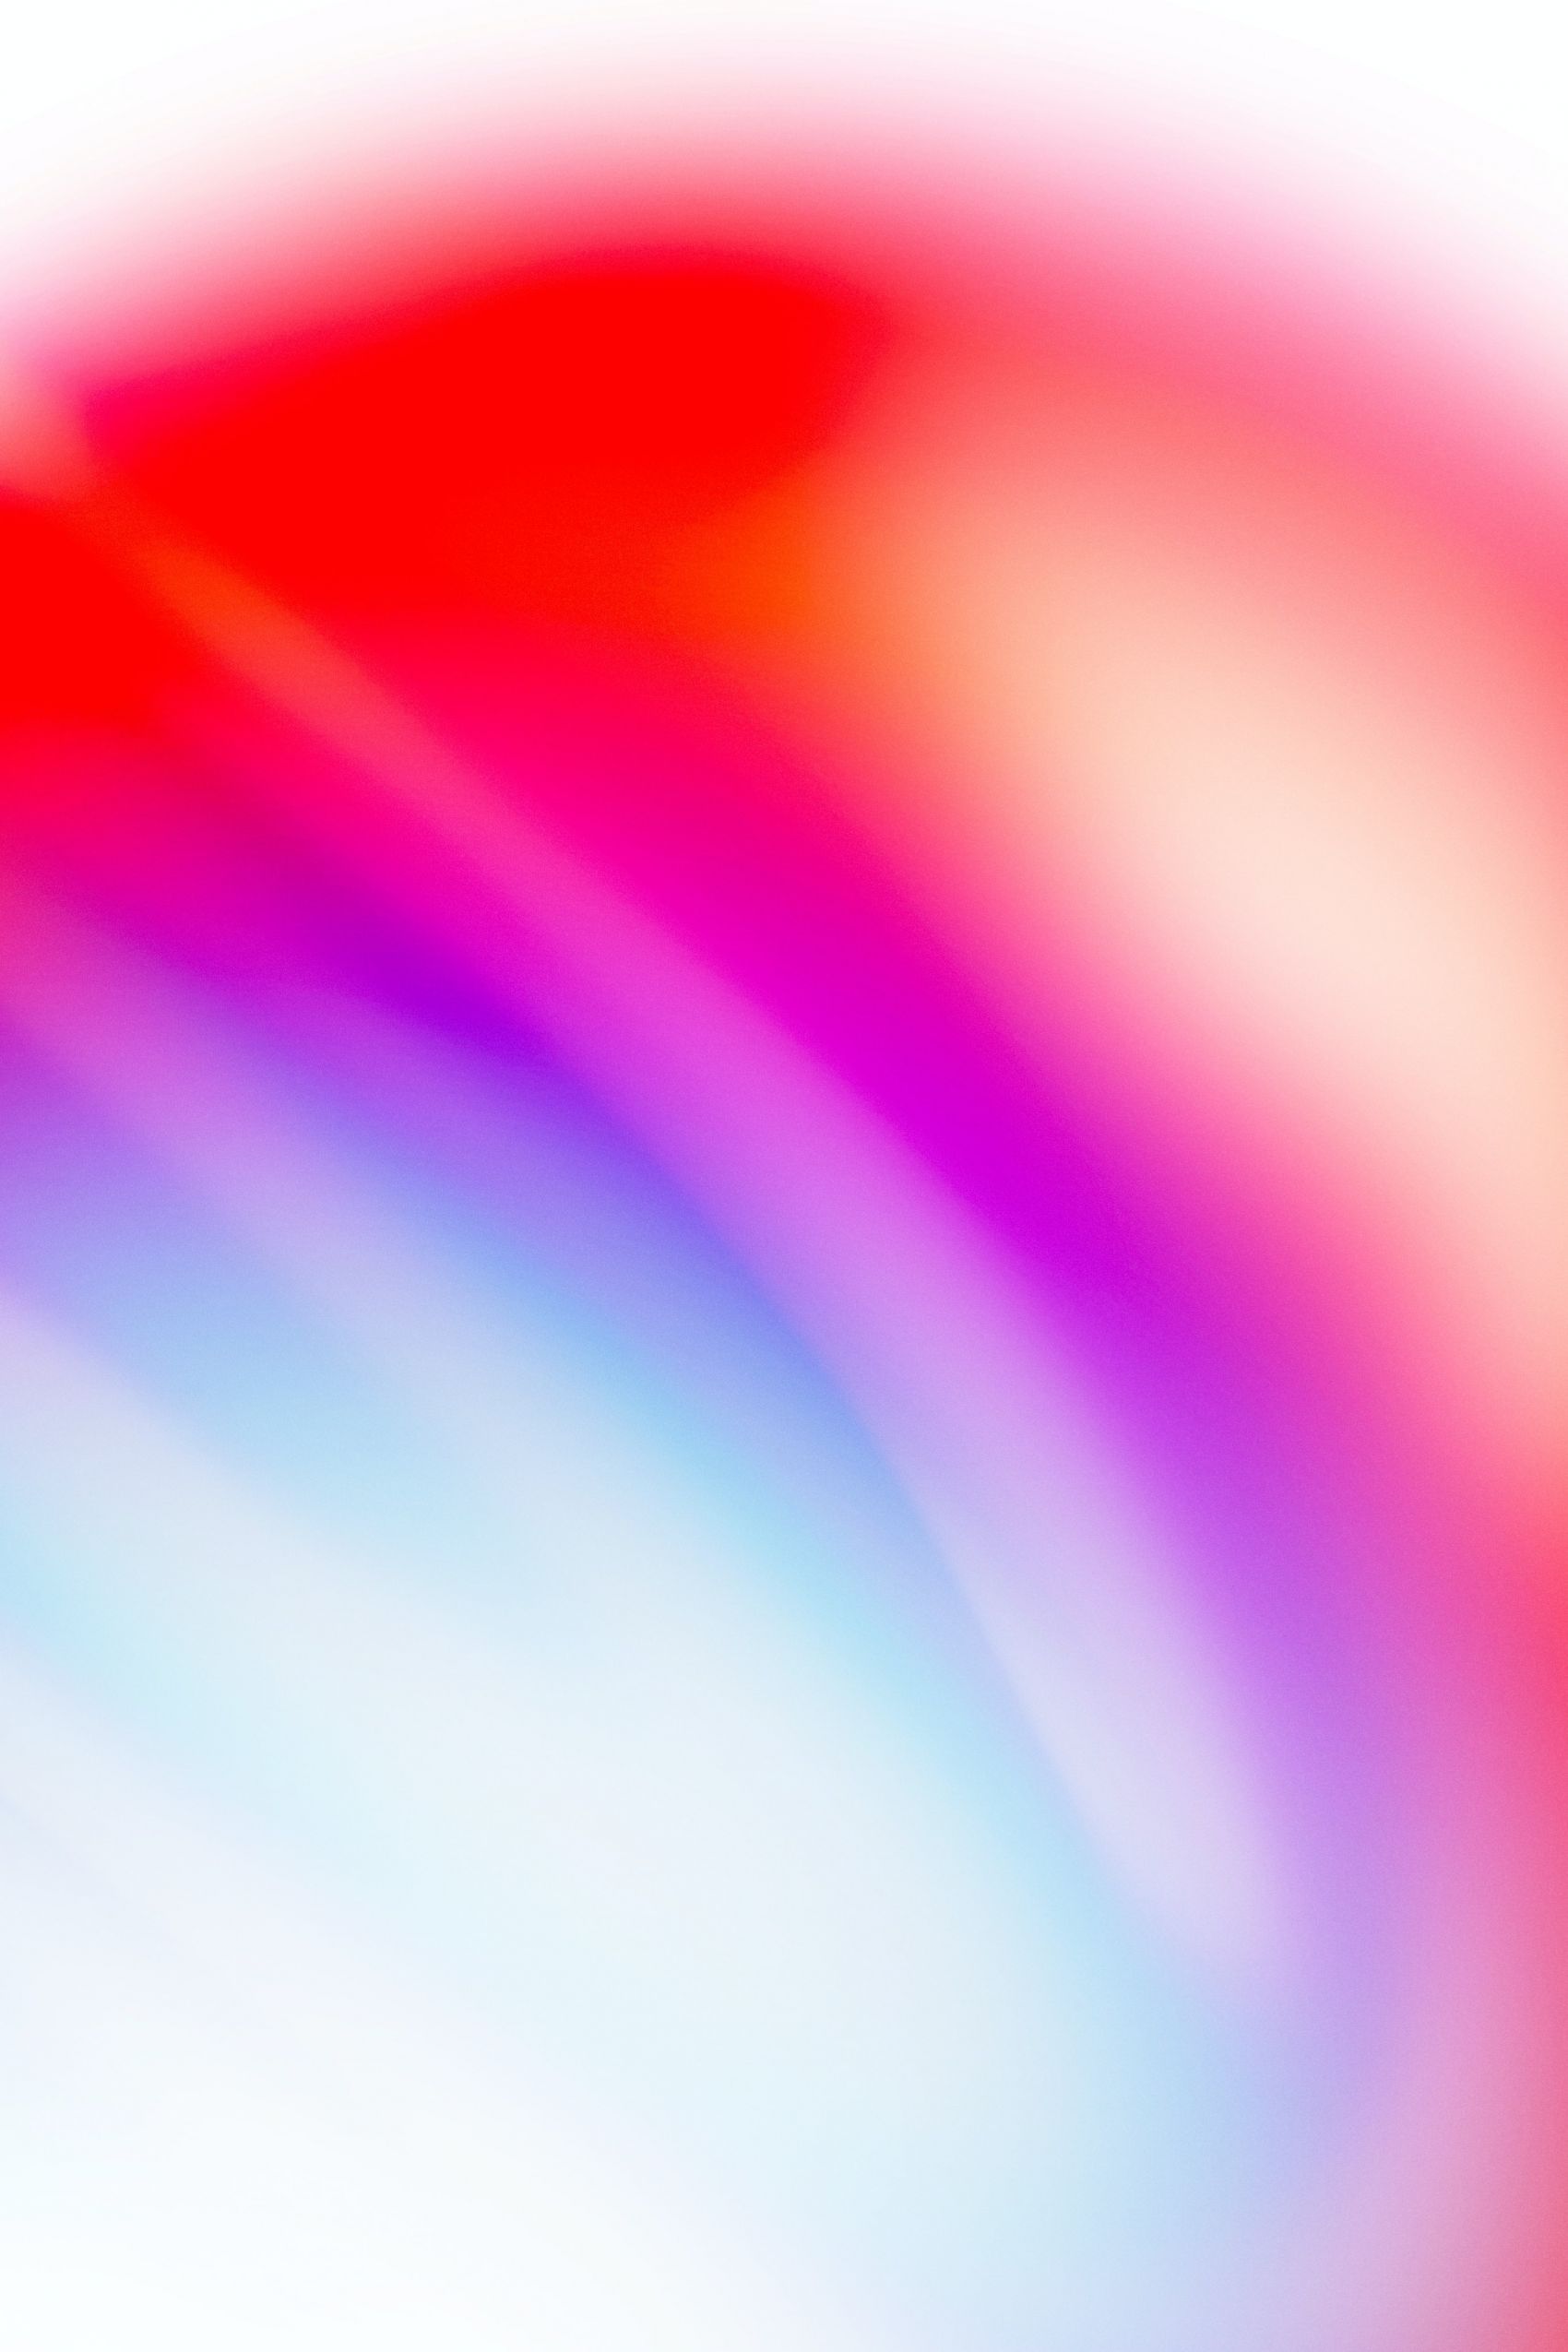 五彩绚丽的红蓝霓虹渐变壁纸 欧莱凯设计网 08php Com